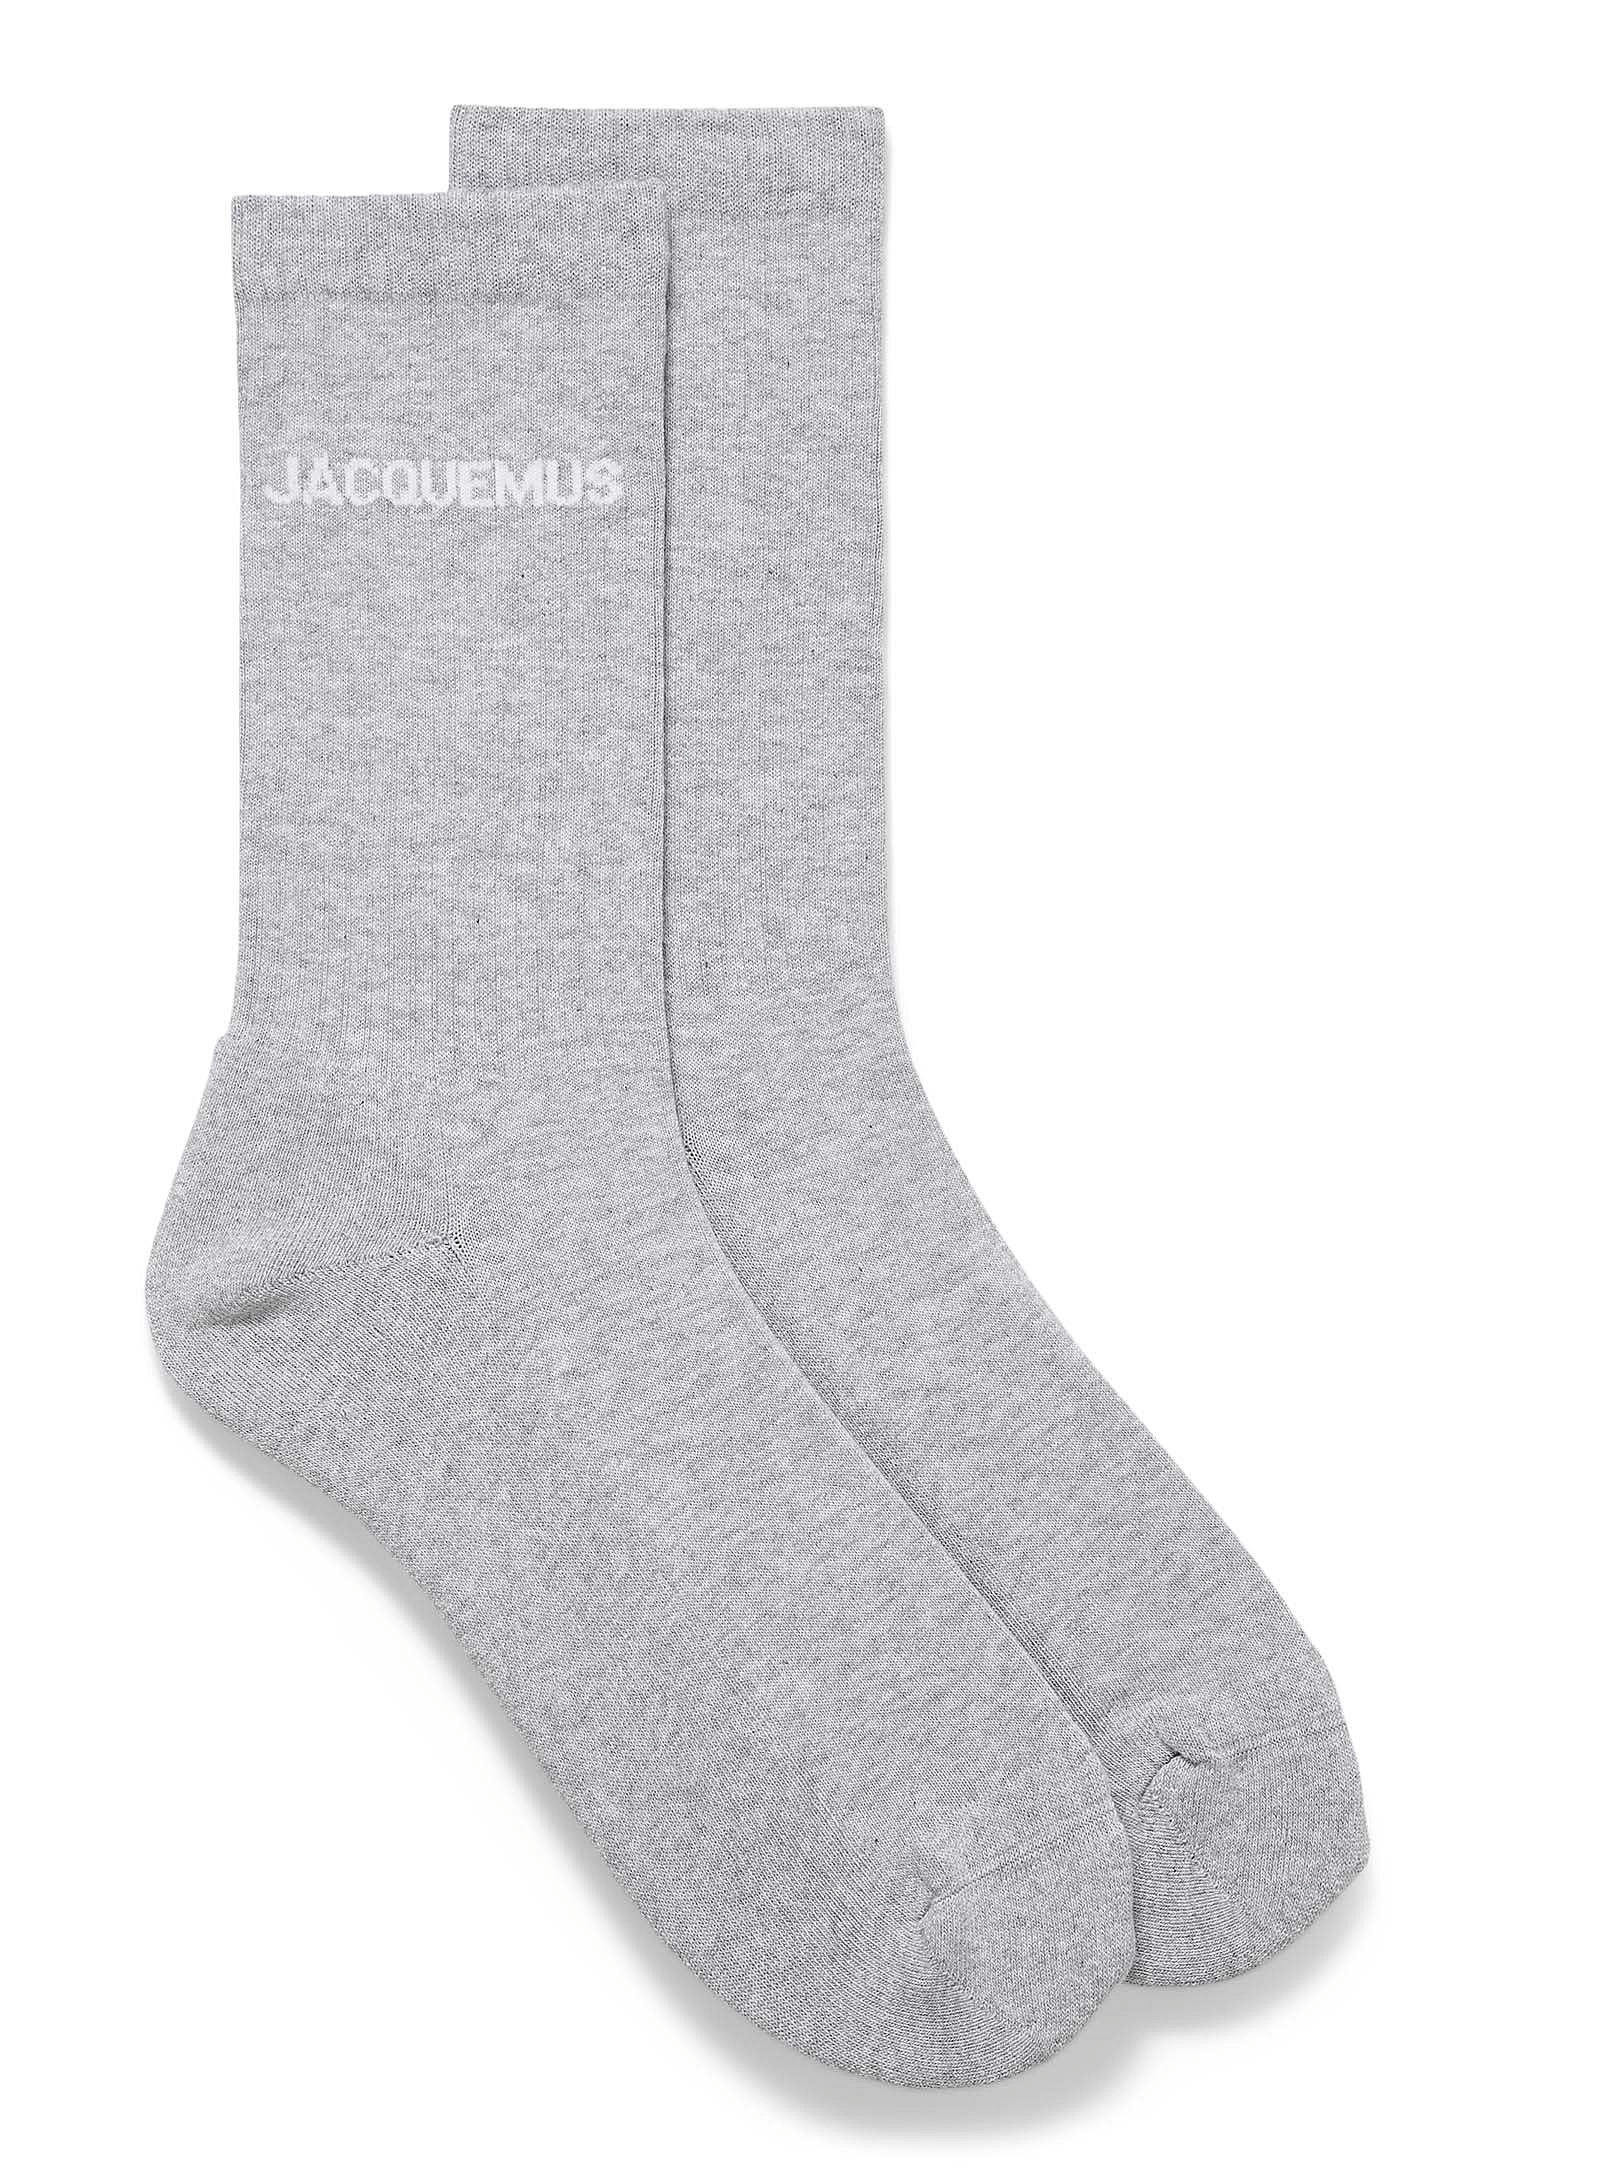 Jacquemus - Men's socks